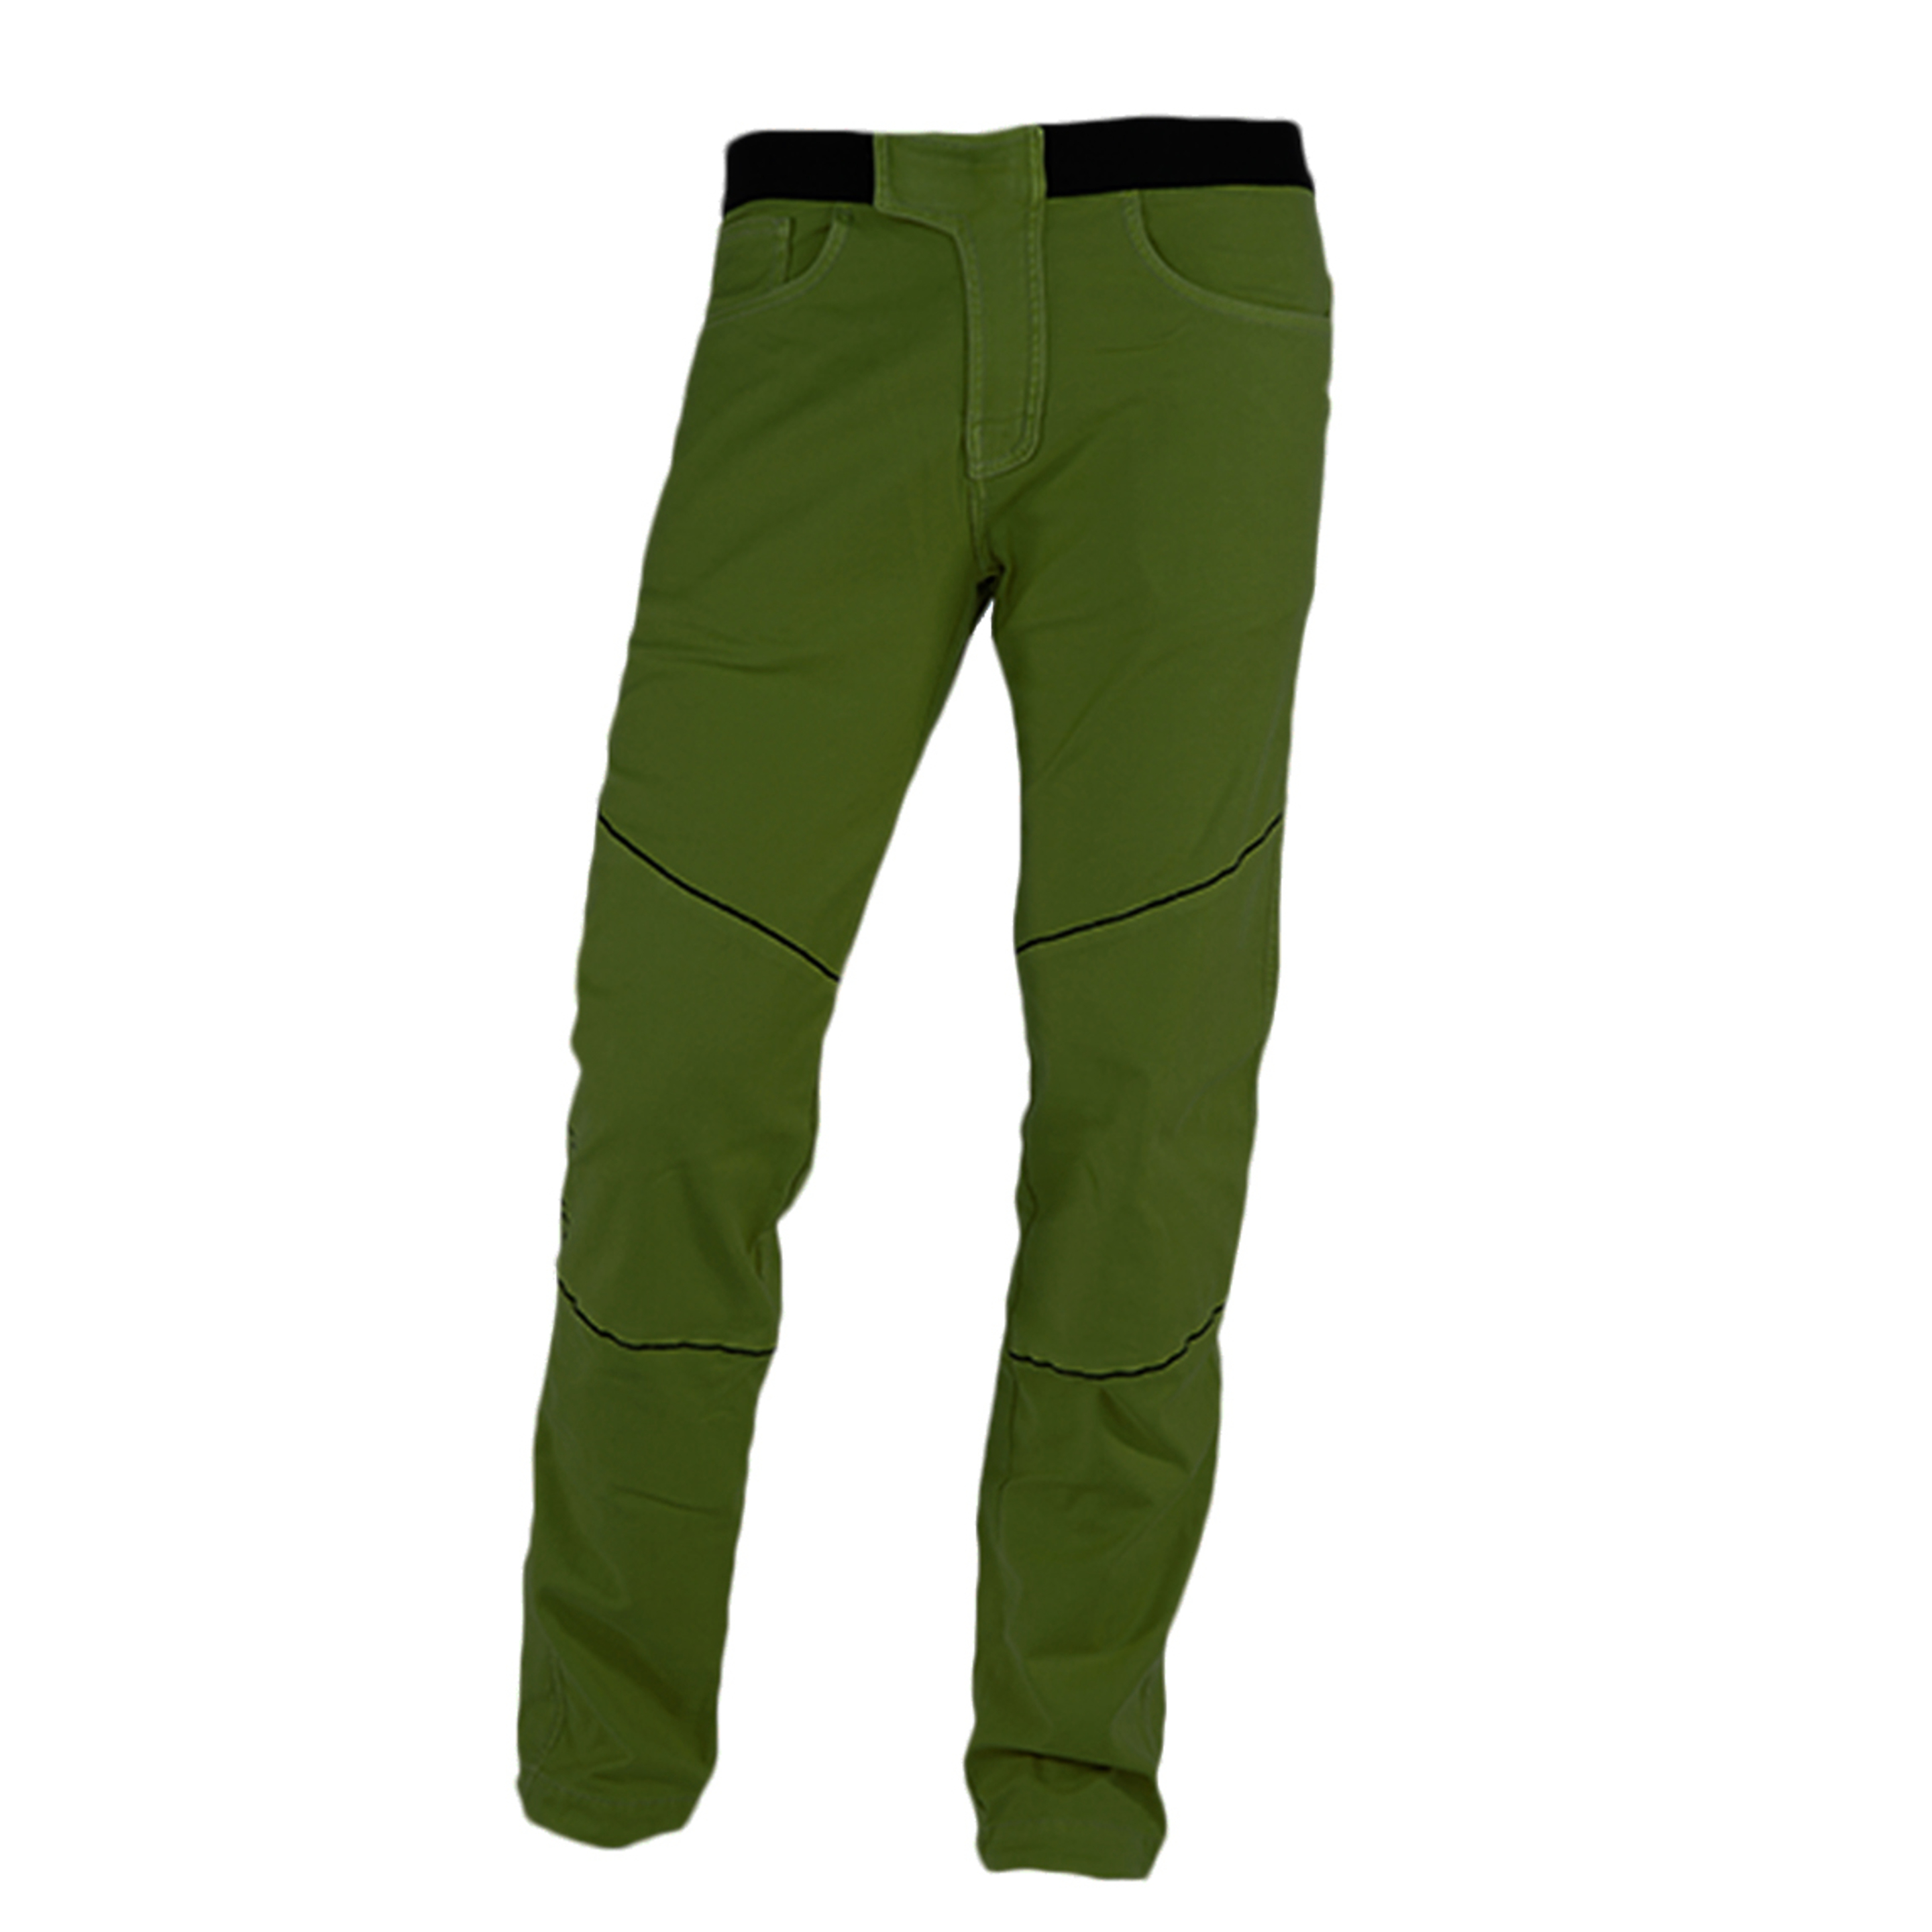 Pantalón Escalada Jeanstrack Turia - verde-oscuro - 